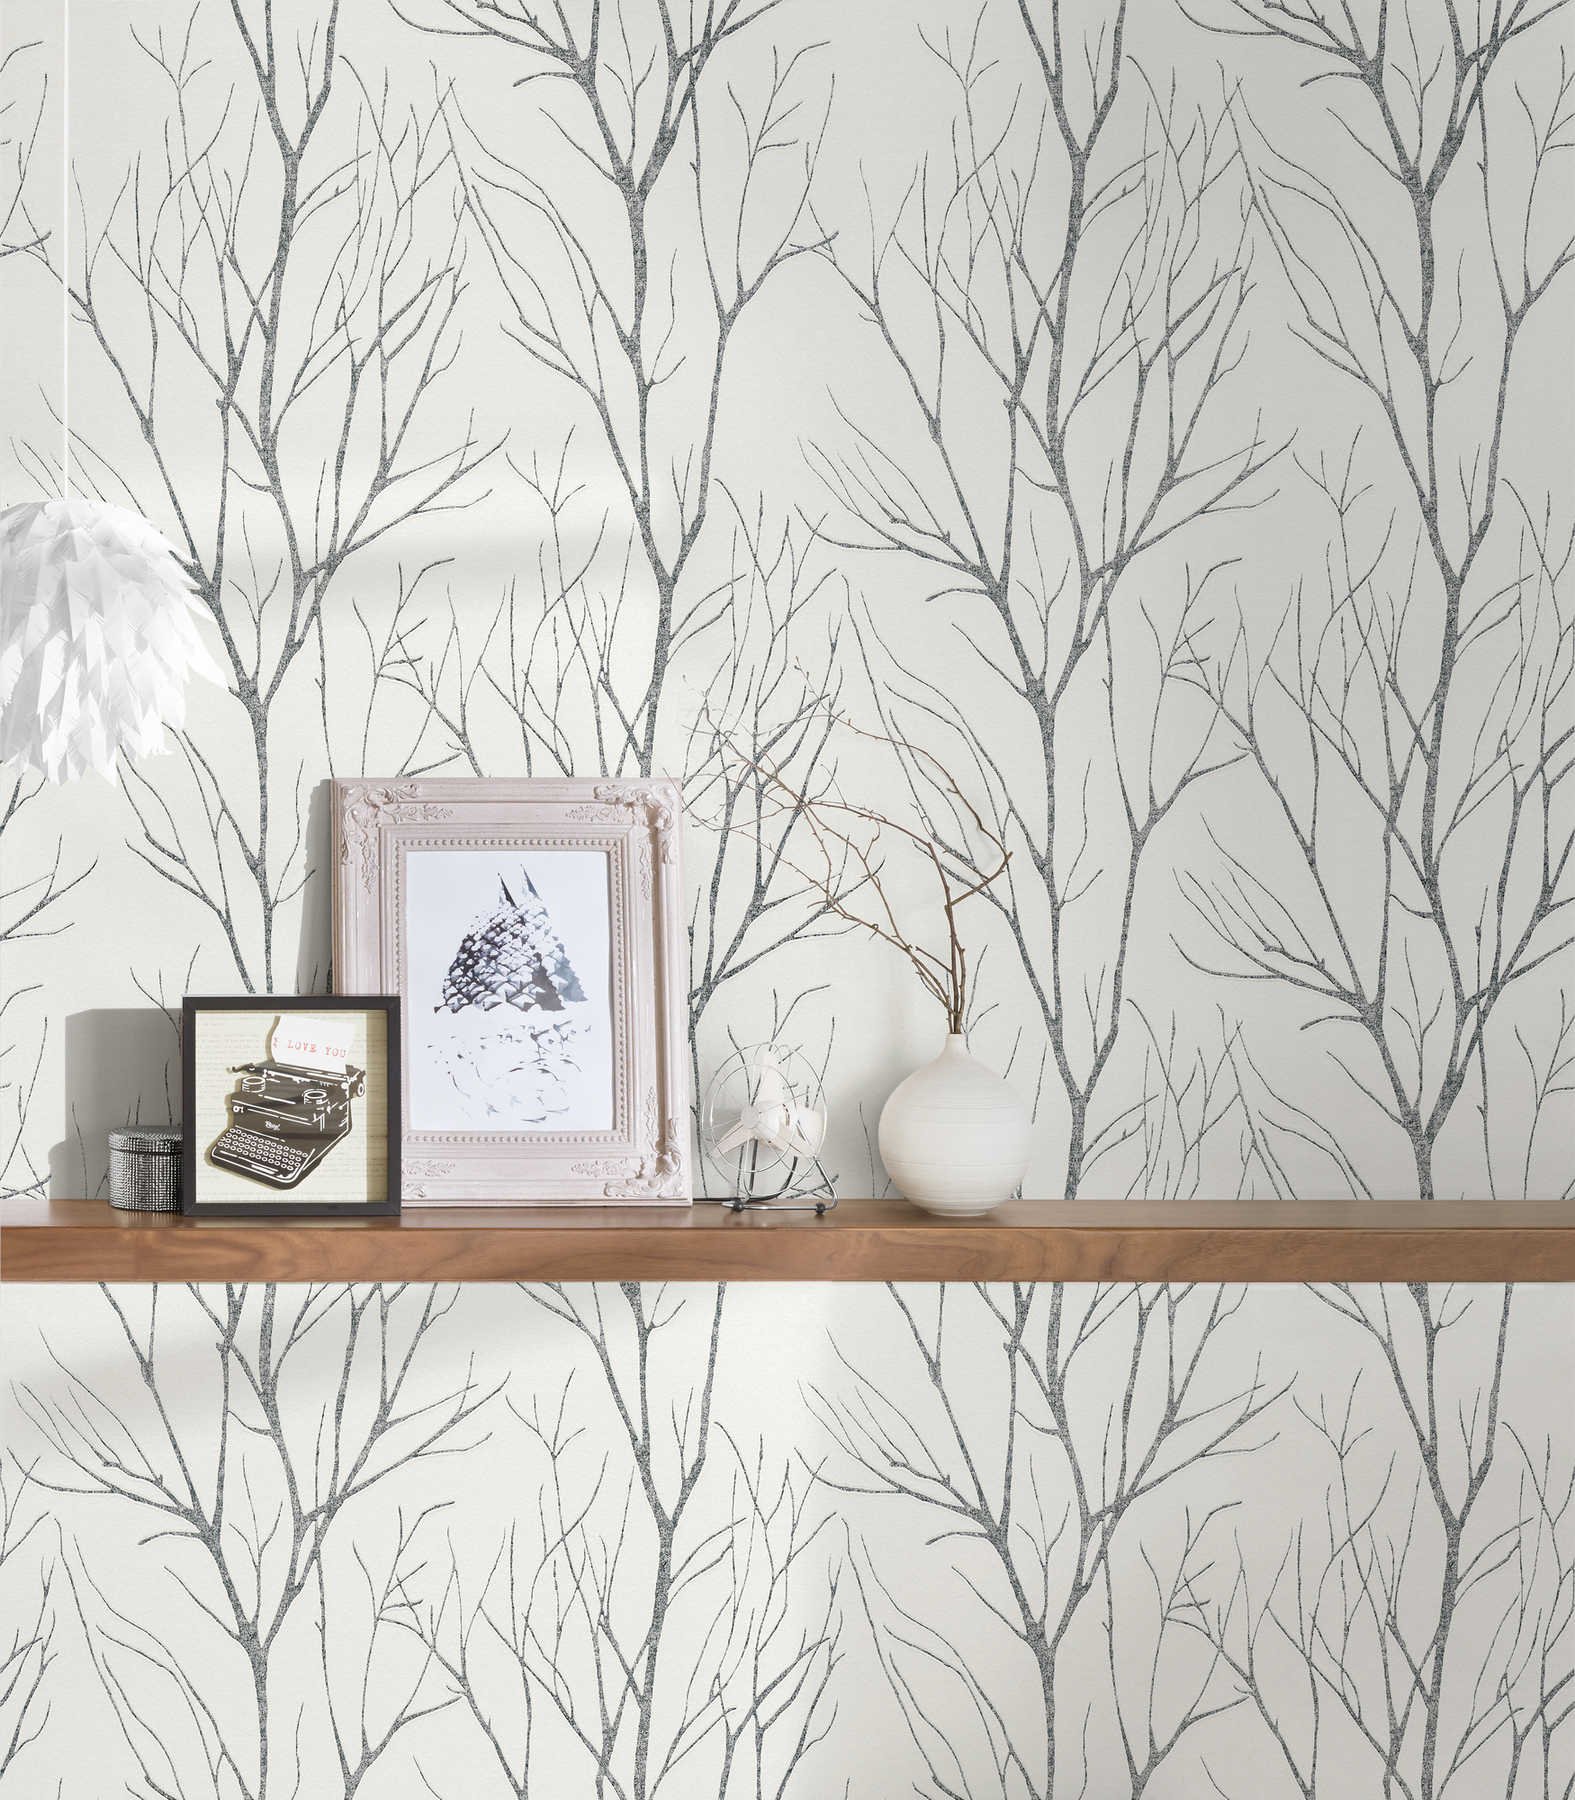             Non-woven wallpaper tree motif & metallic effect - grey, black, white
        